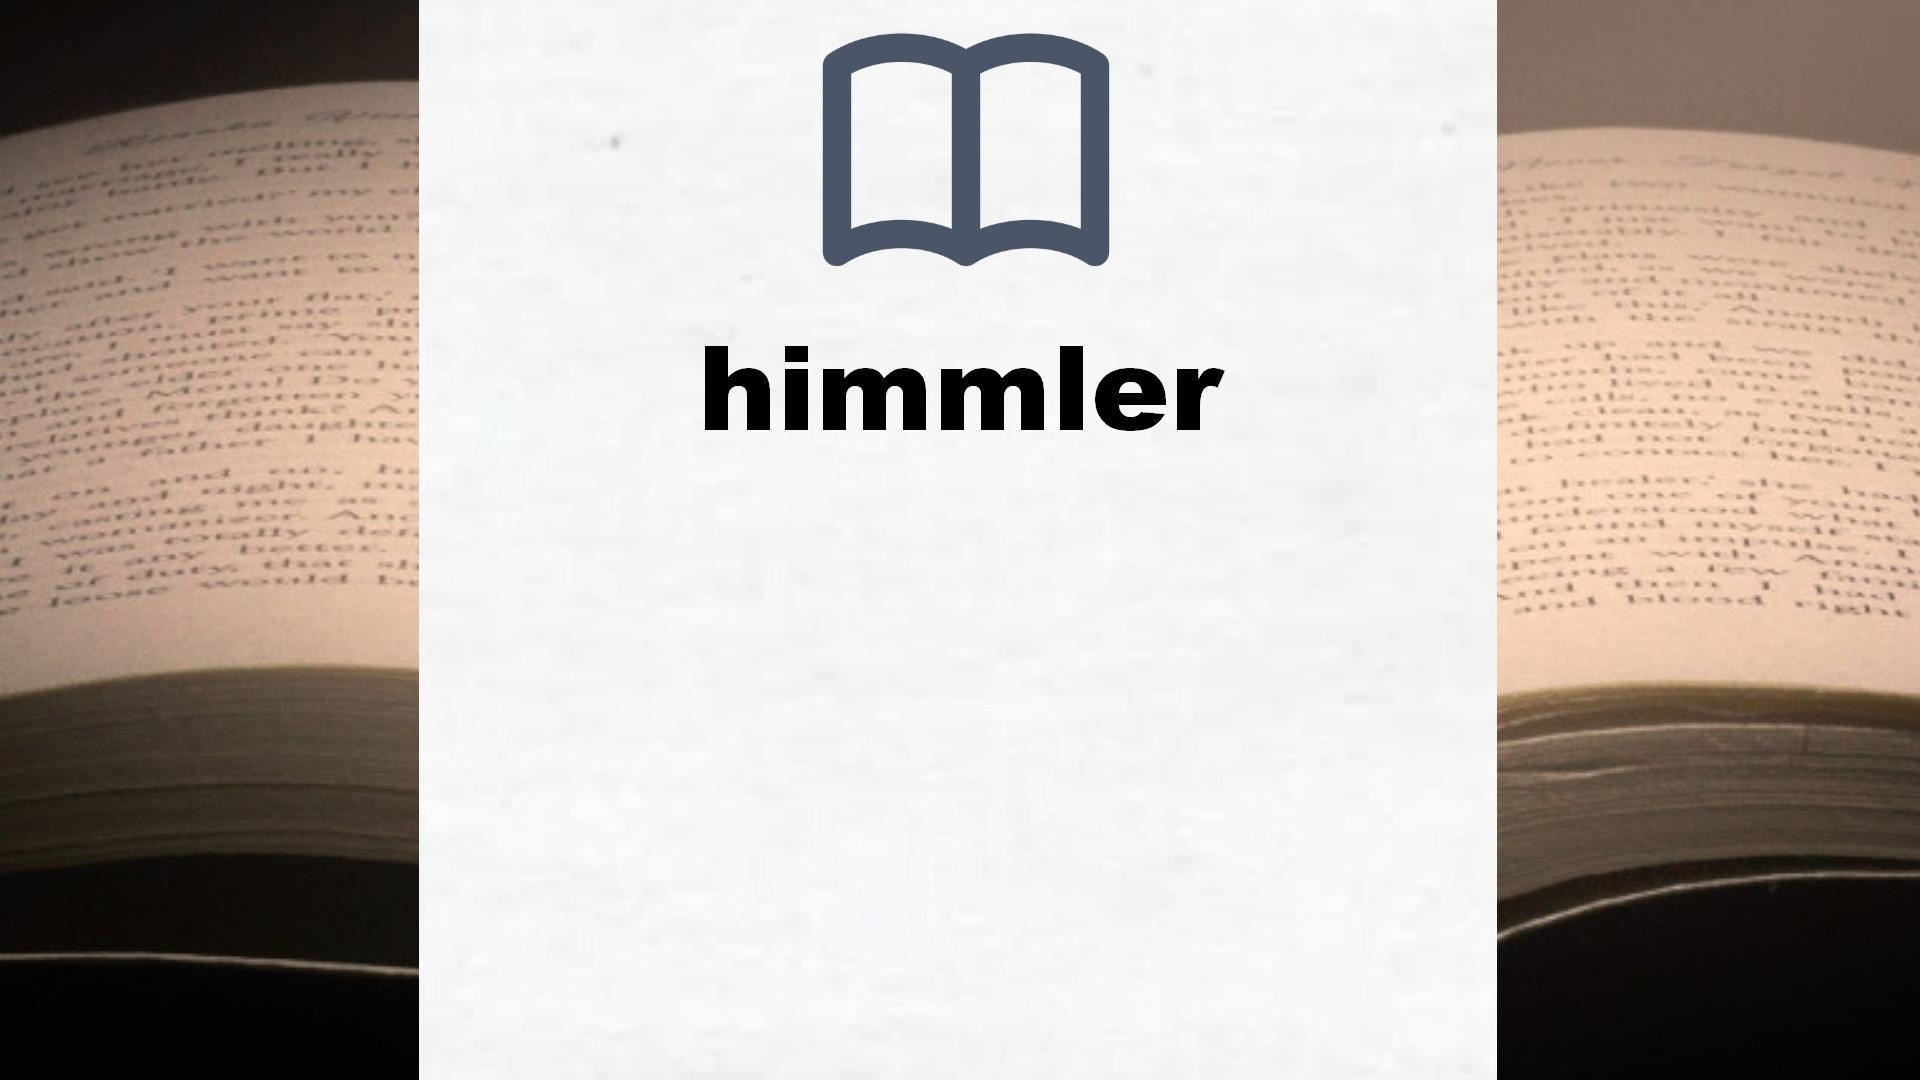 Libros sobre himmler